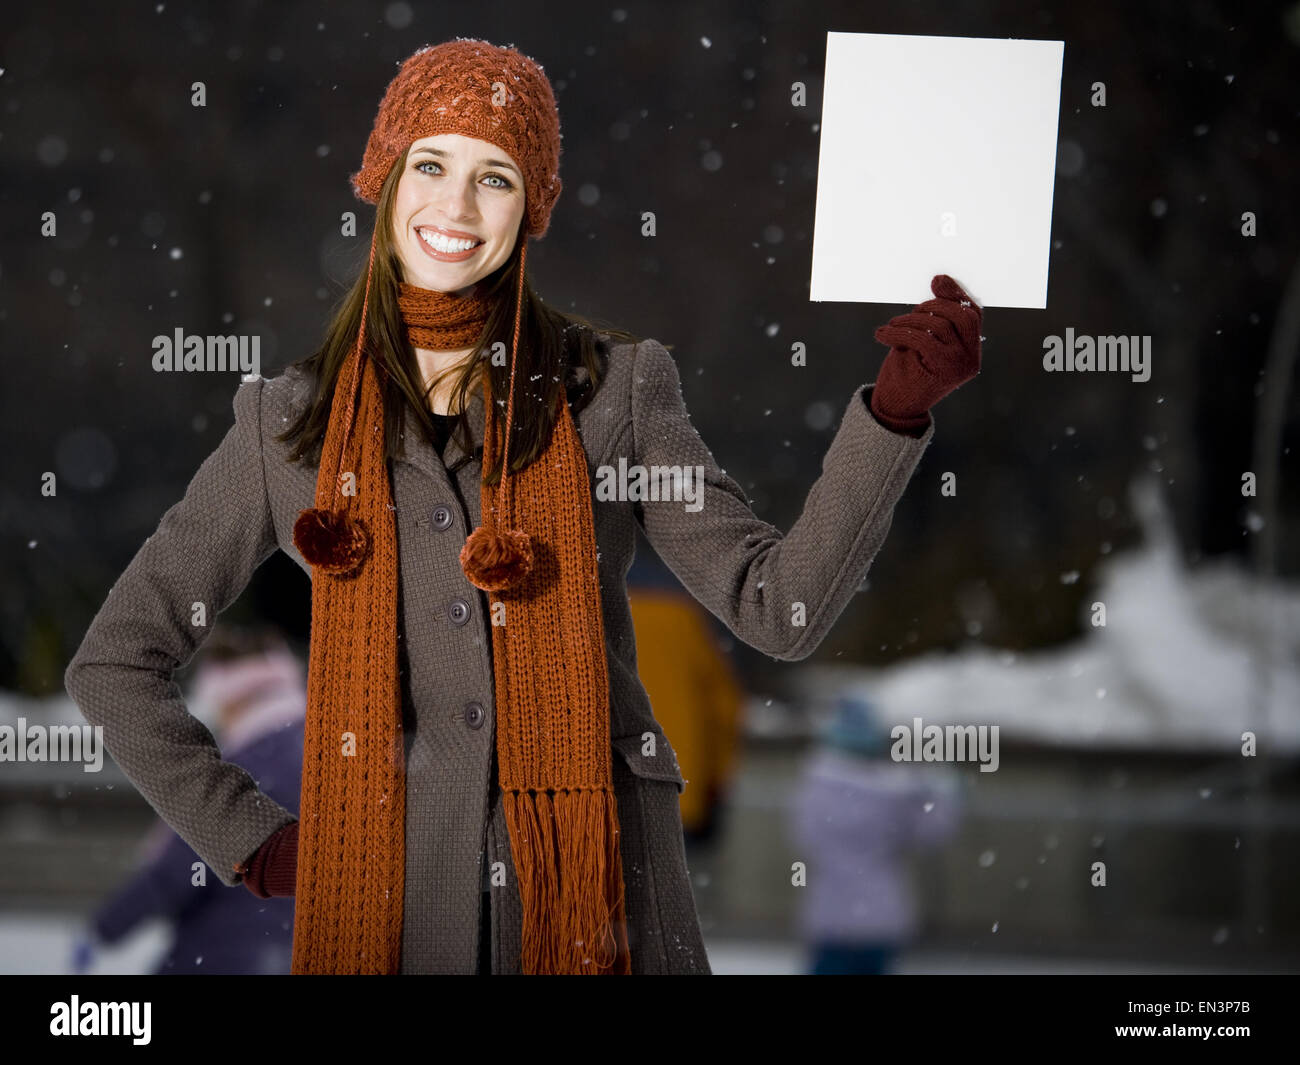 Frau mit Skates mit leere Schild im Freien im winter Stockfoto